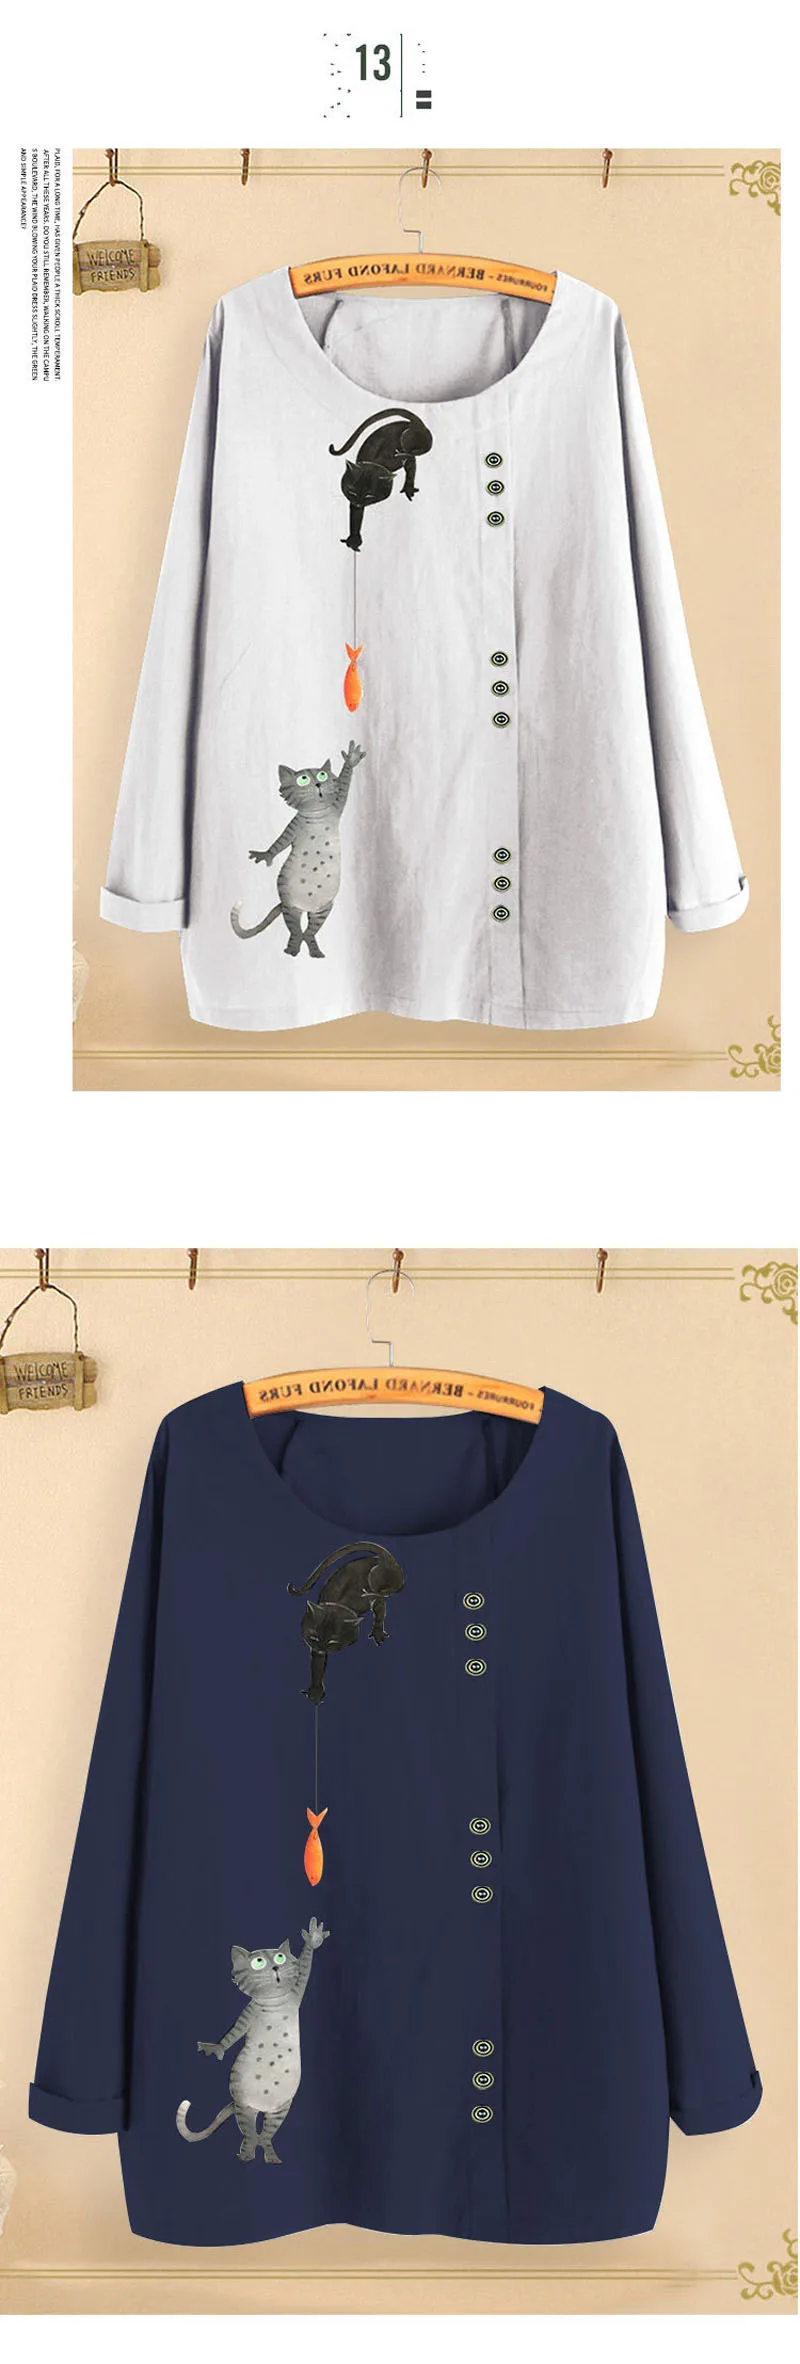 Harajuku Kawaii футболка Женская Осенняя Милая забавная кошка рыба из хлопчатобумажной ткани с узором футболки Топы длинный рукав кнопка футболка плюс размер 5XL